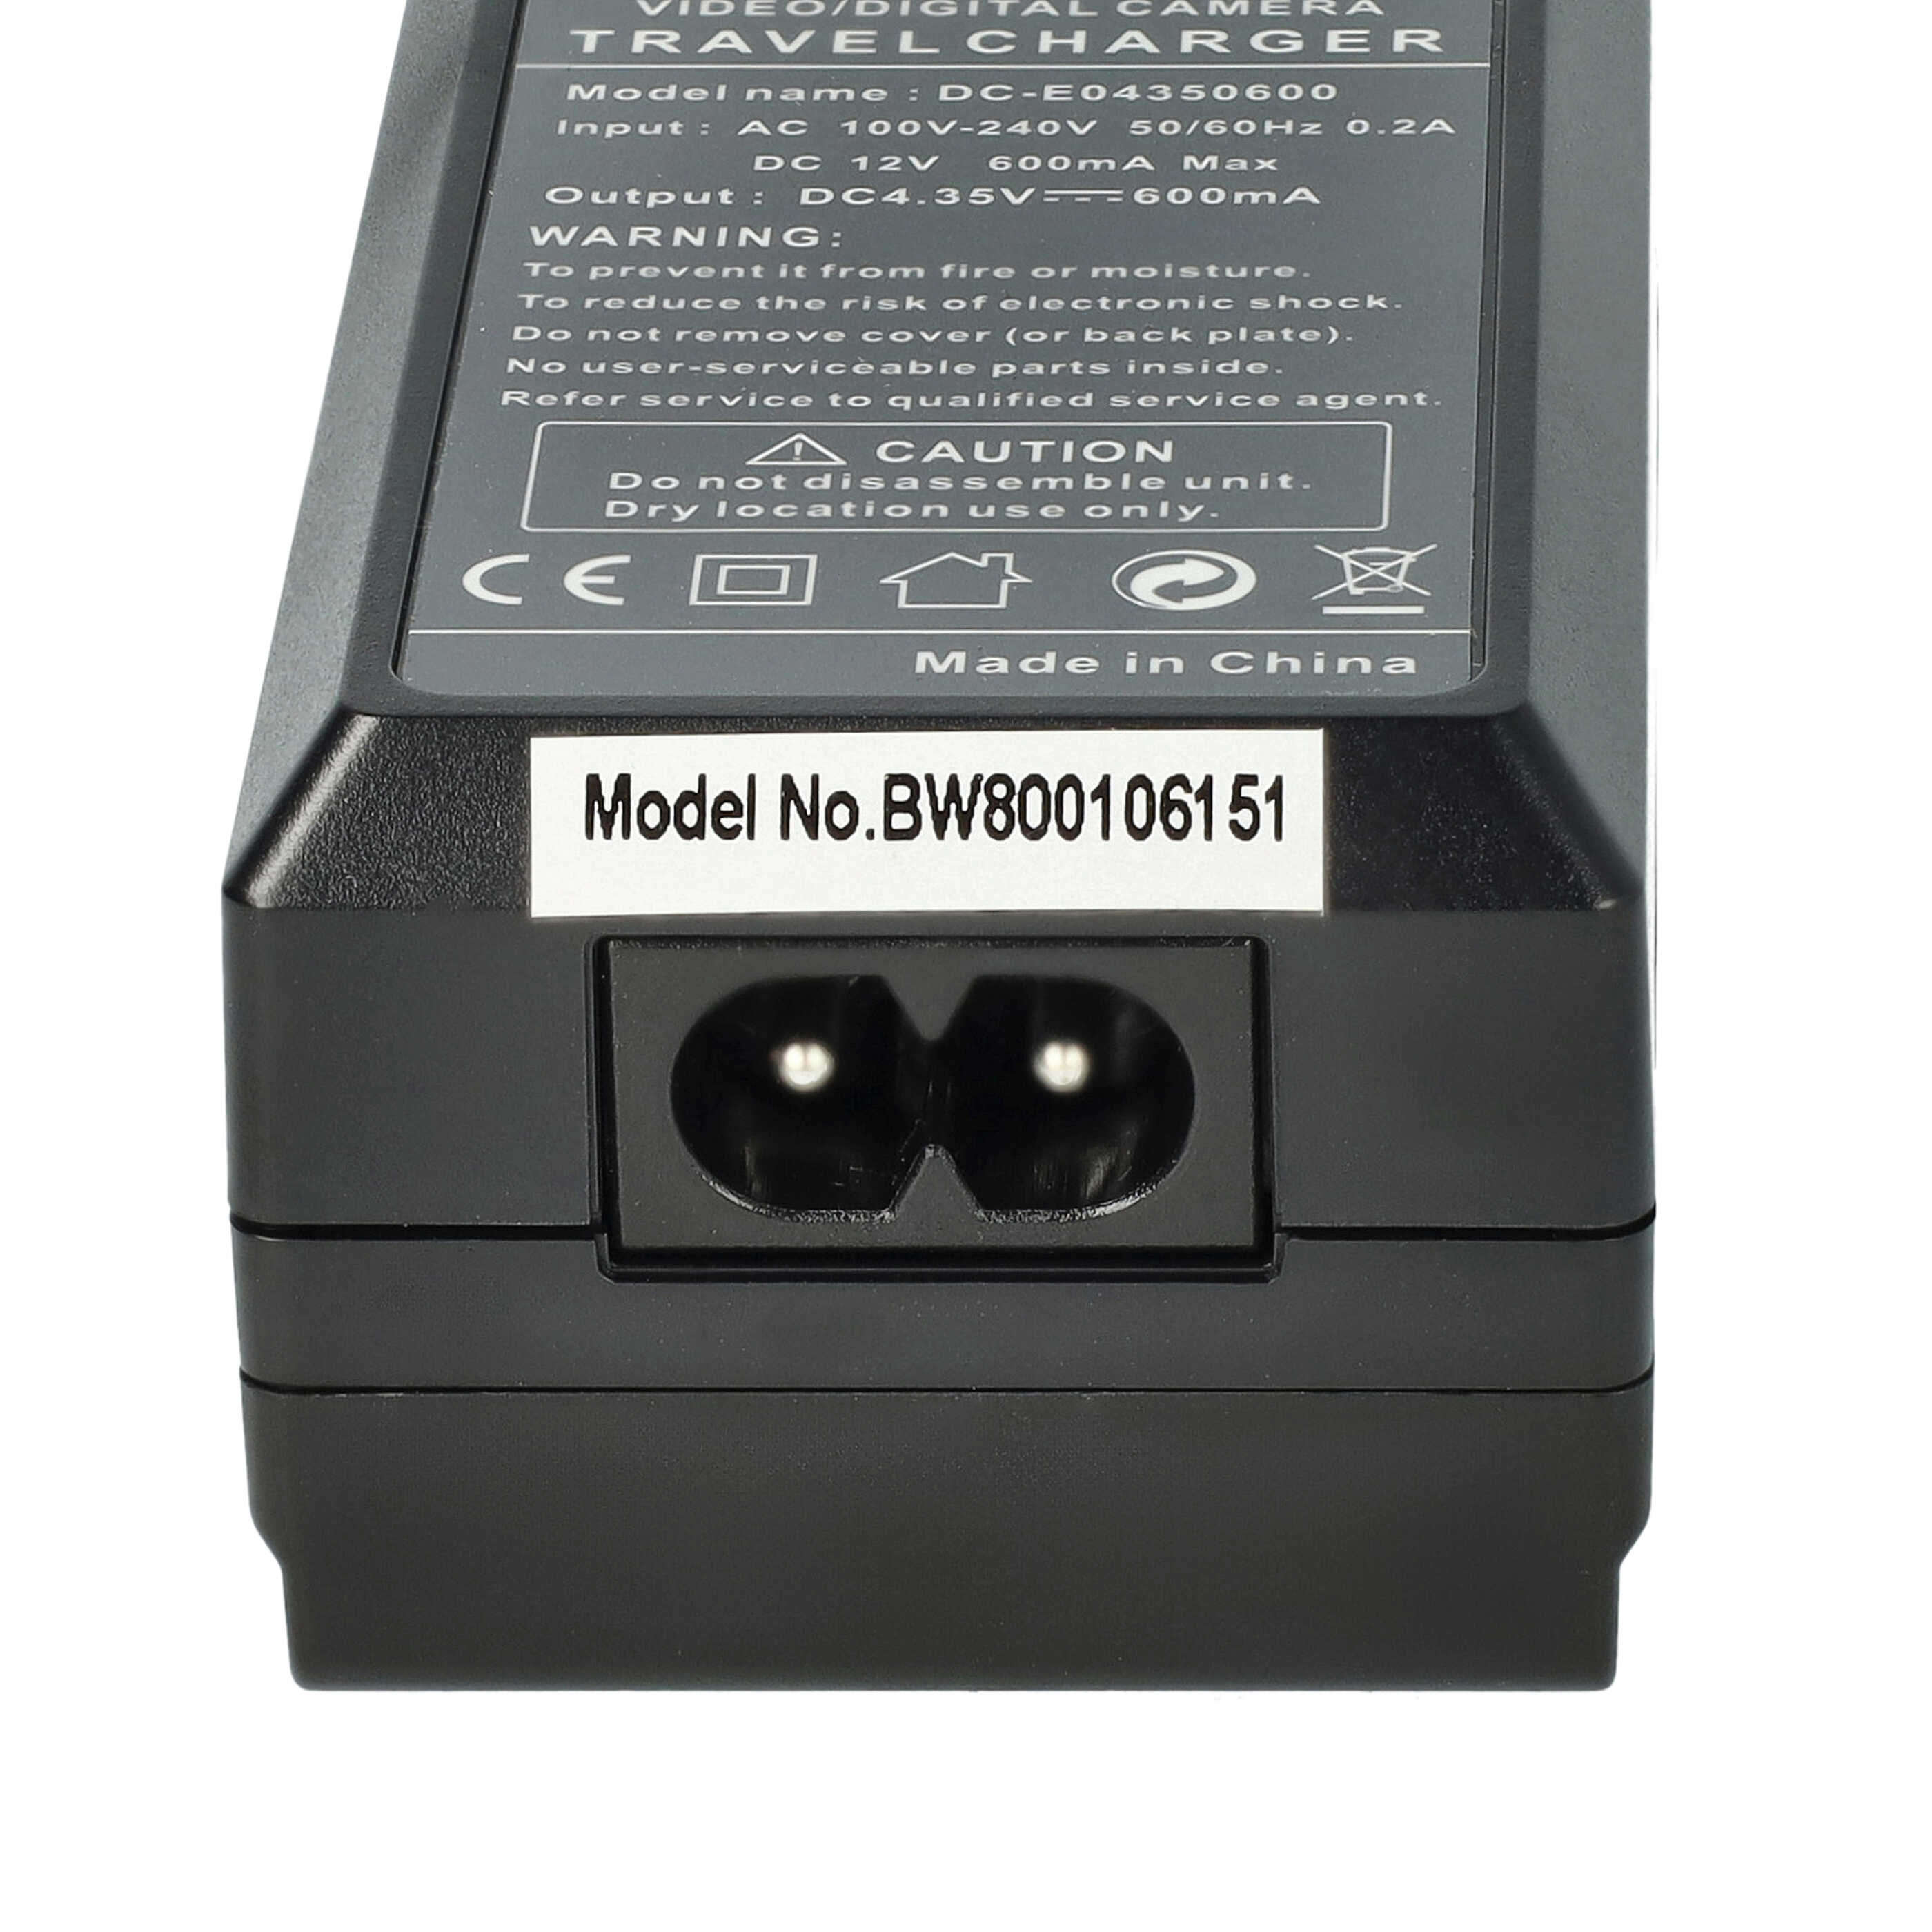 Caricabatterie + adattatore da auto per fotocamera Coolpix - 0,6A 4,35V 88,5cm